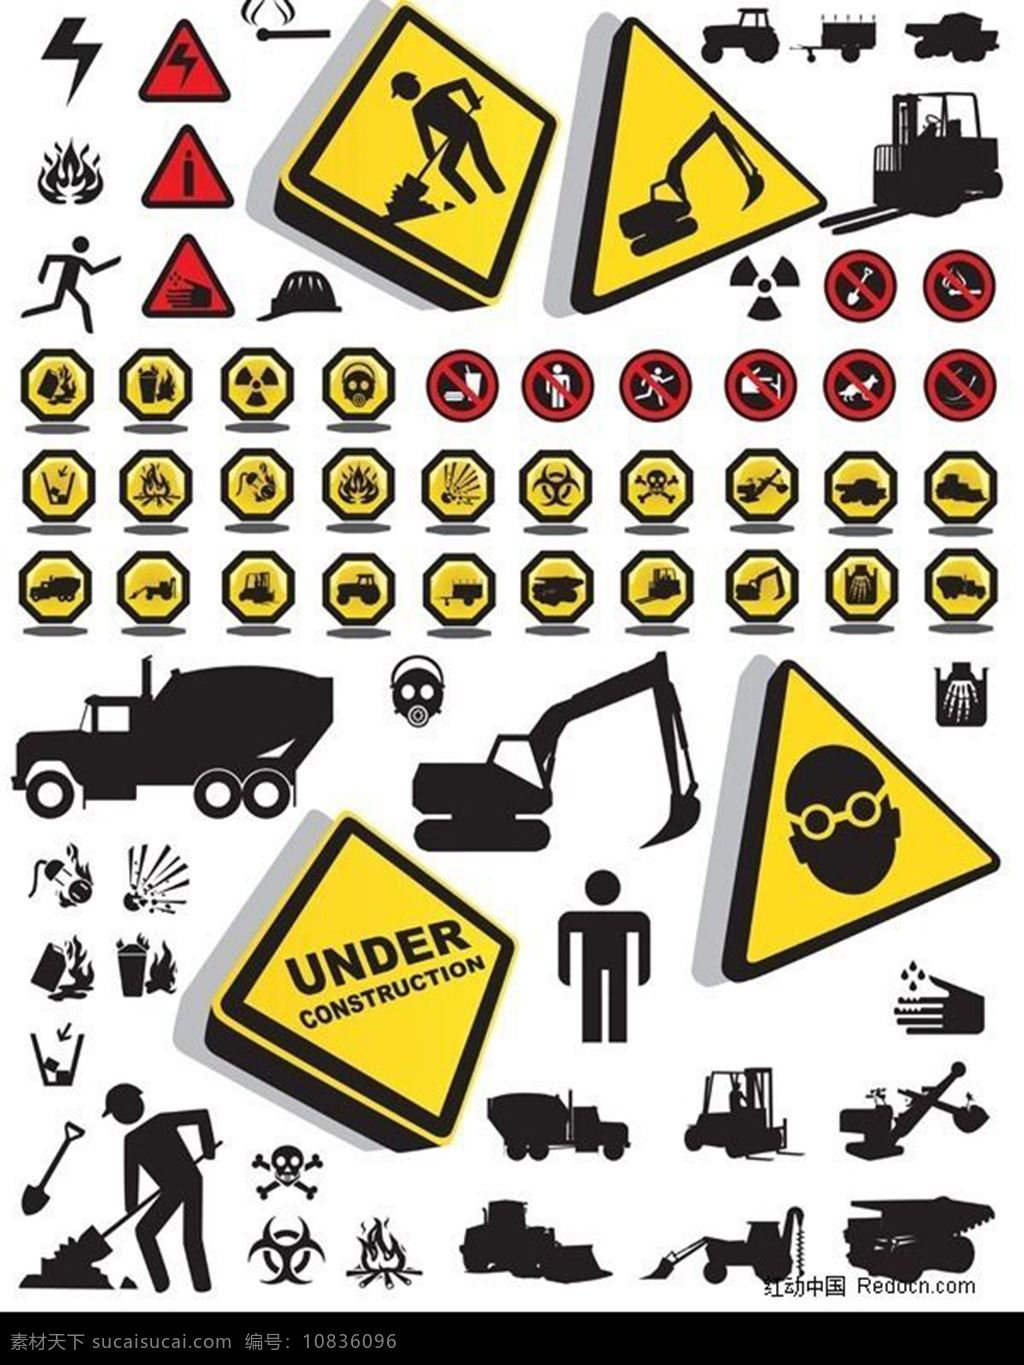 施工 中 注意 安全 图标素材 安全警示牌 公共标志 公共图标 施工安全 图标 白色